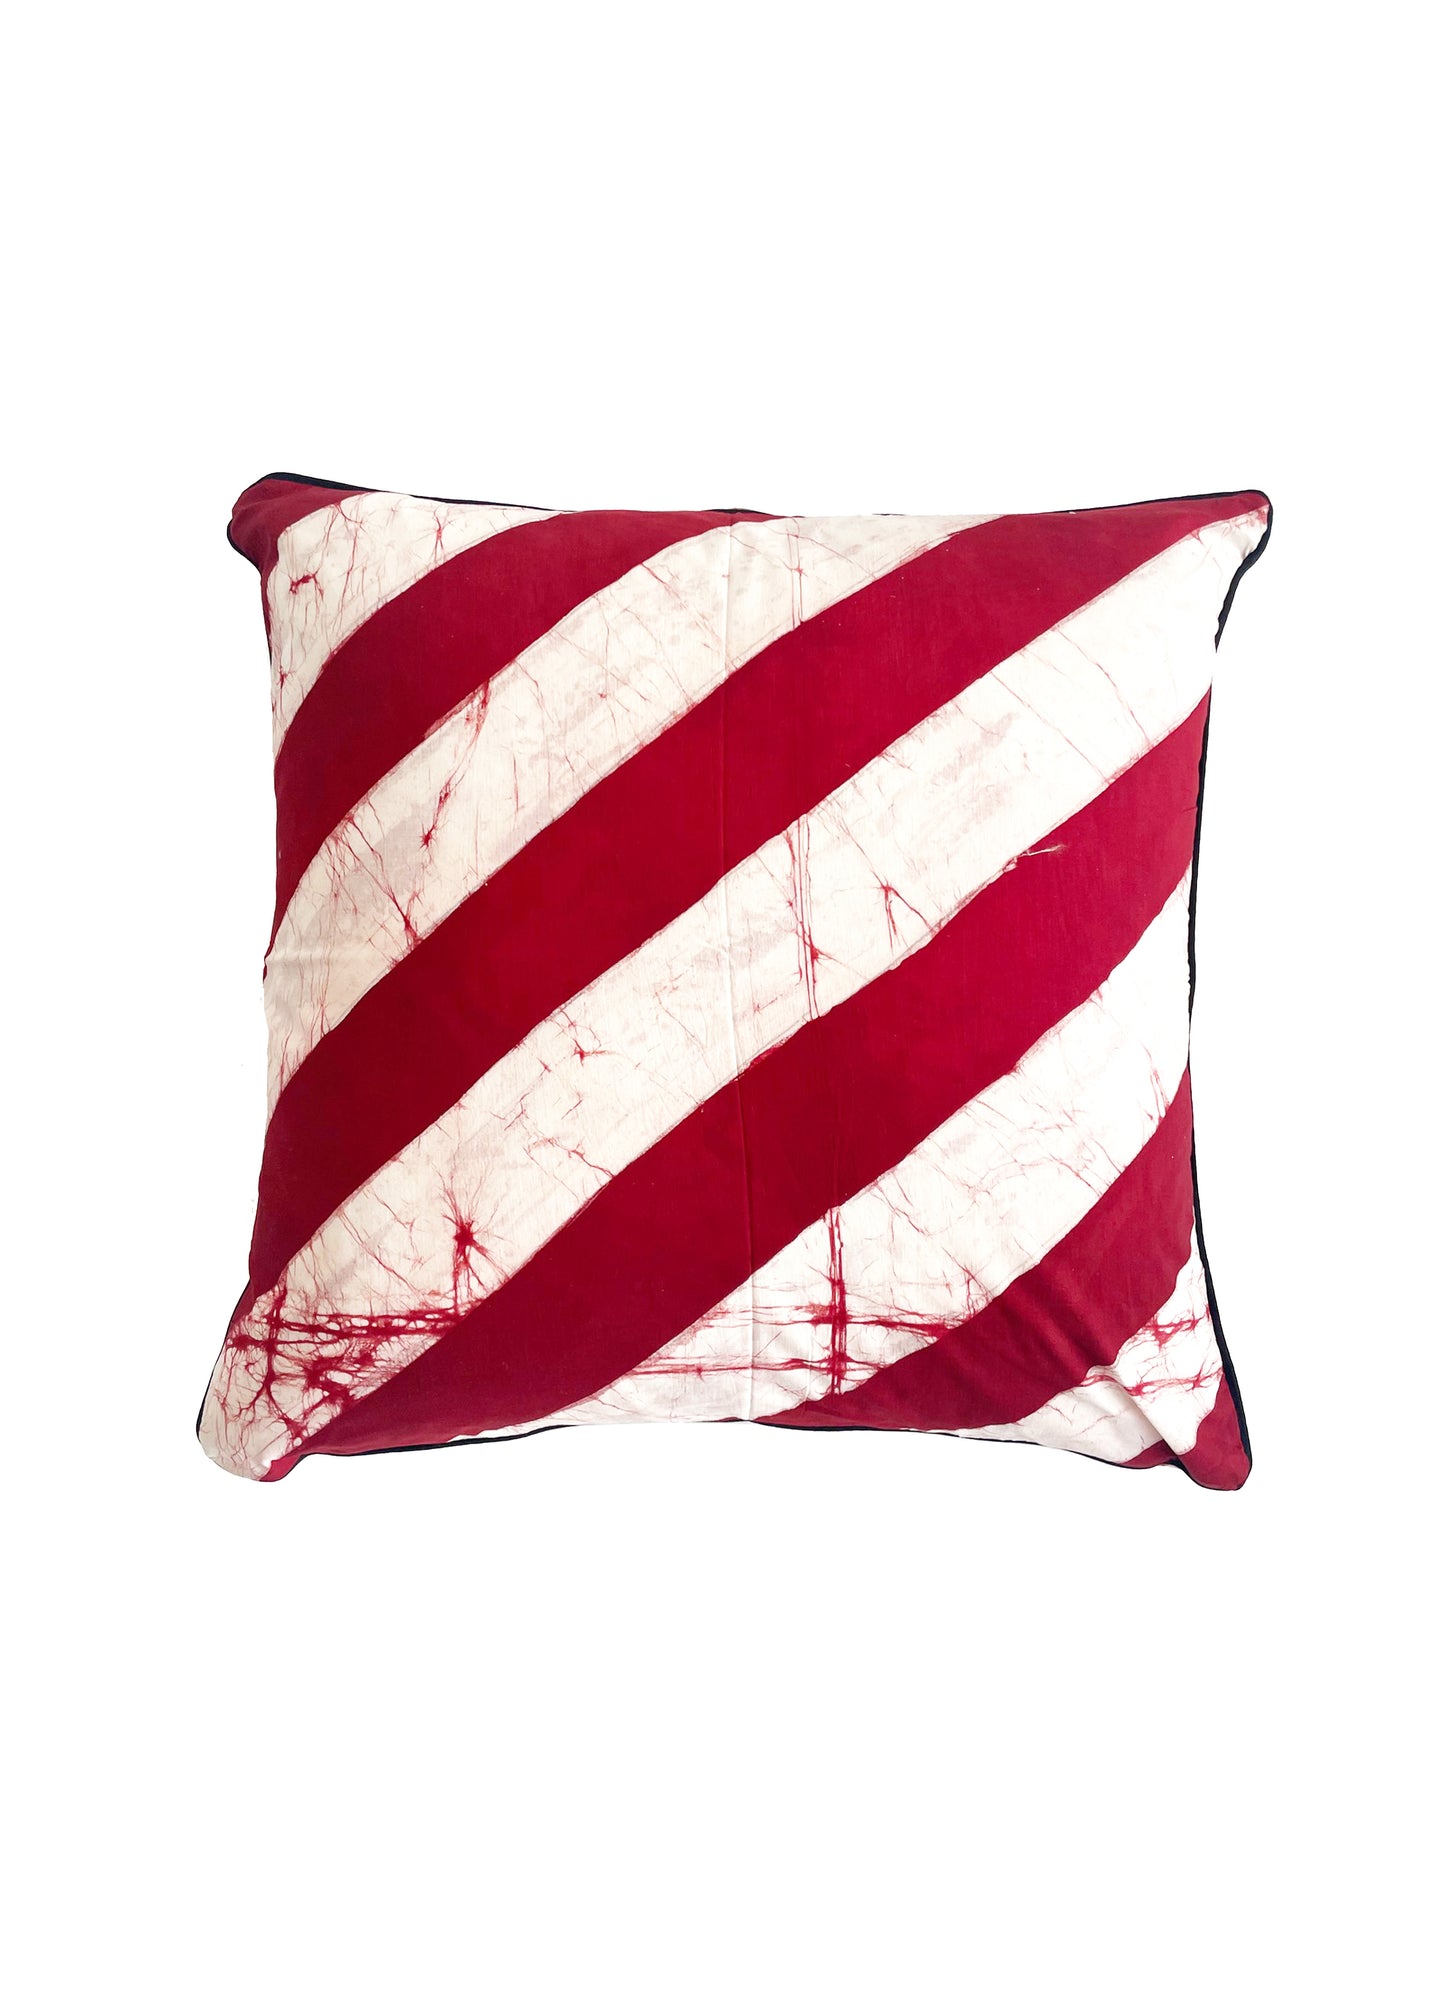 FREDDY Cushion/ Red diagonal